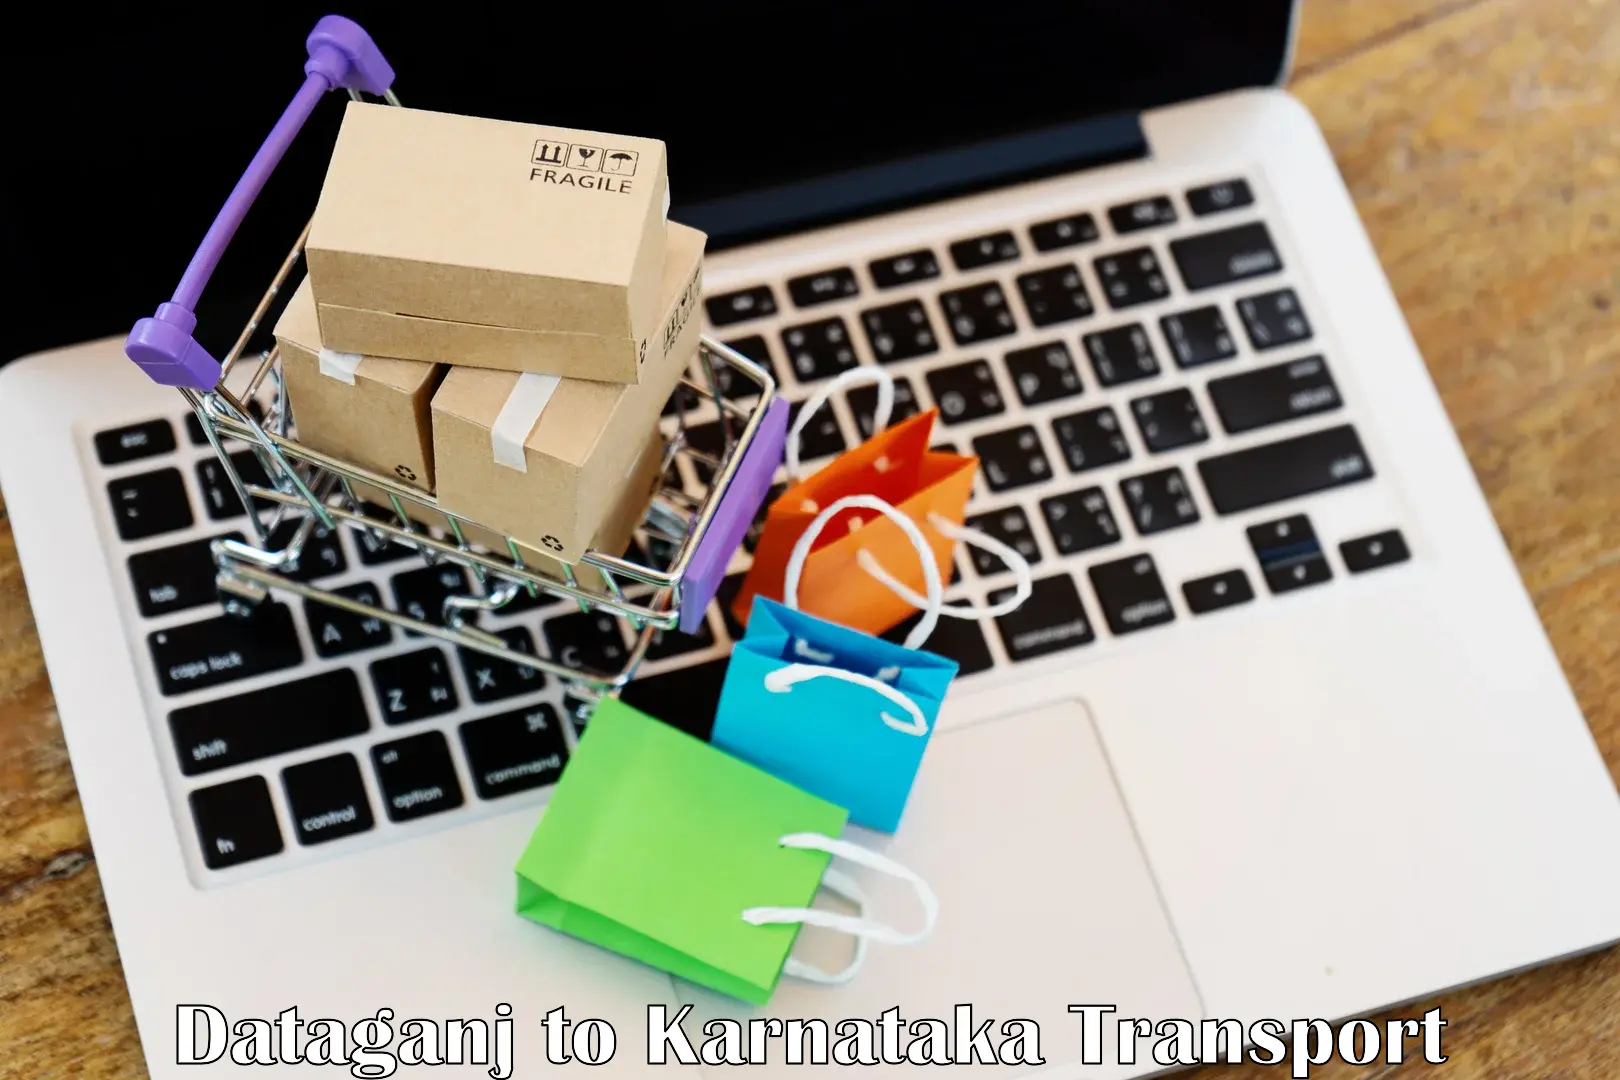 Online transport Dataganj to Karnataka